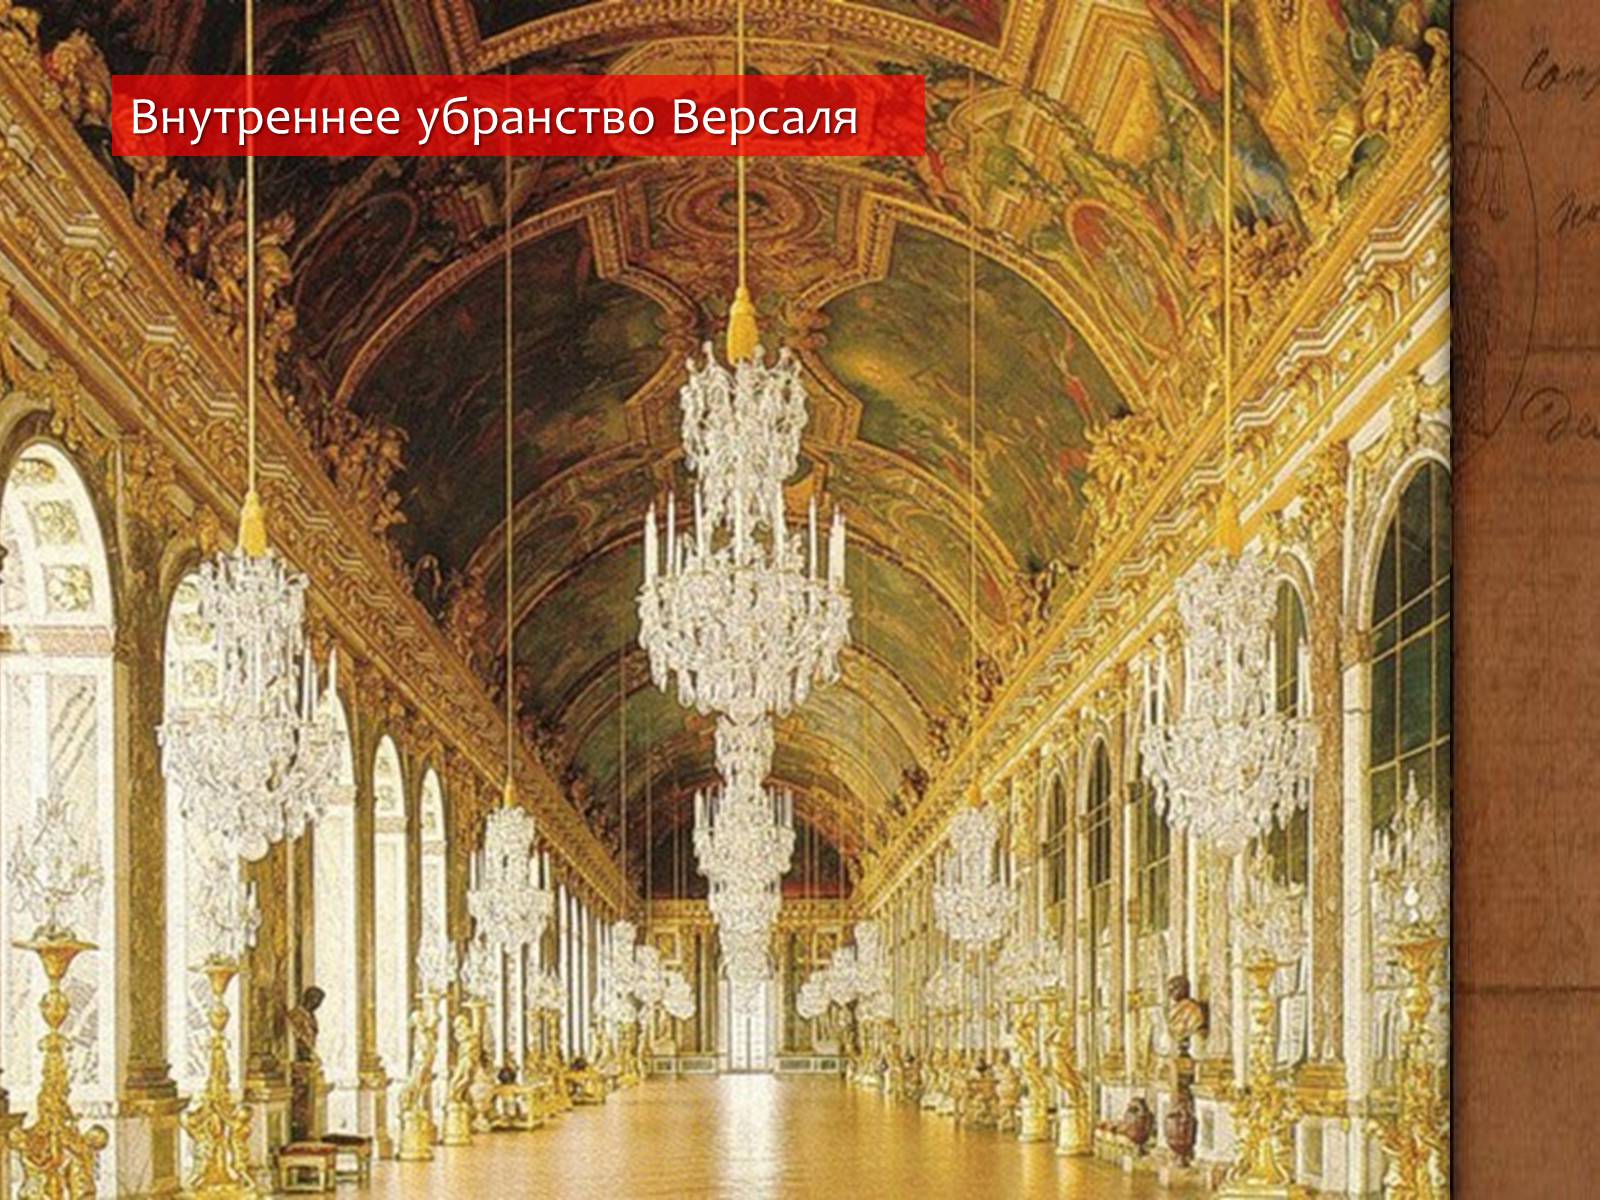 Почему версаль. Дворец Версаль Франция внутри. Версаль дворец Франция 18 век. Версальский дворец во Франции Людовик 14.